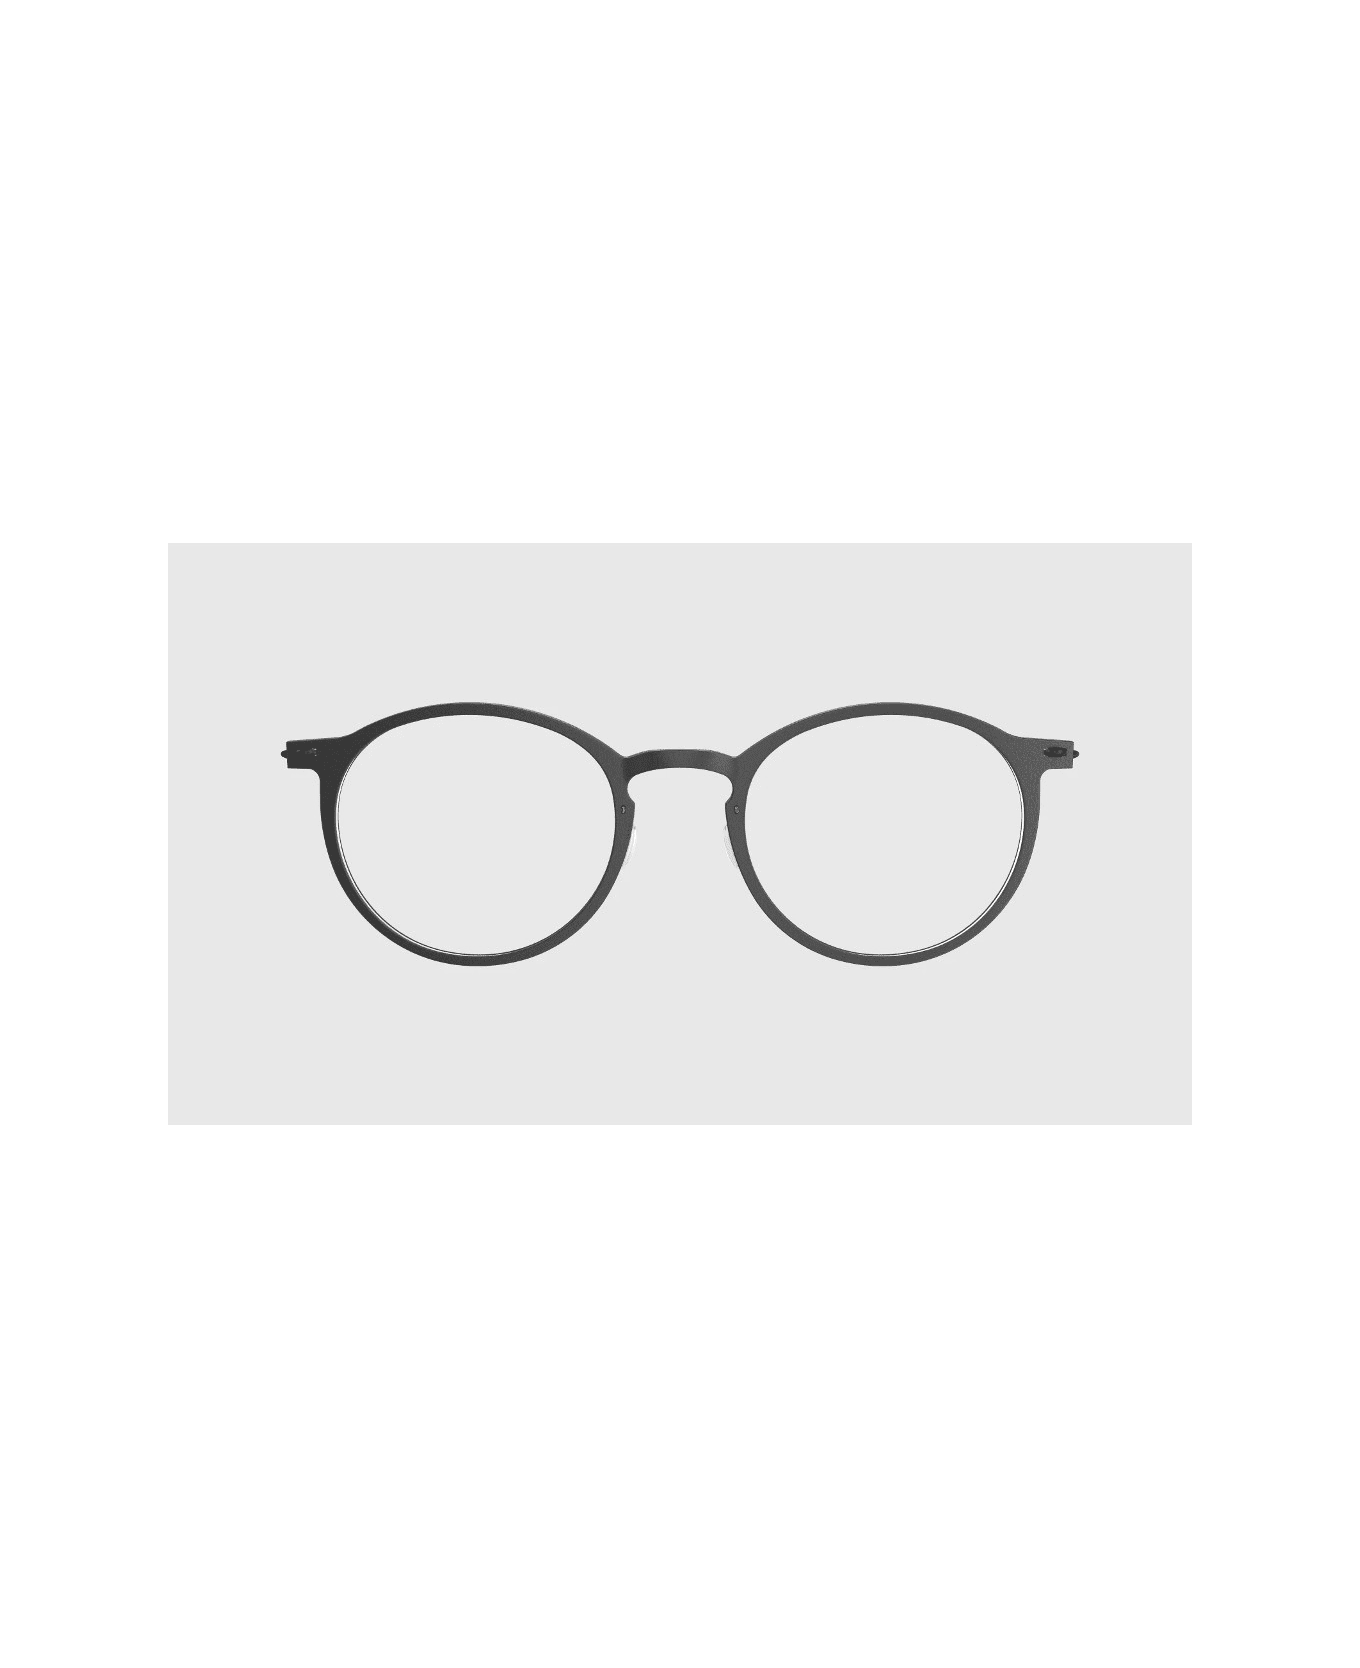 LINDBERG Now 6541 D16 Glasses アイウェア